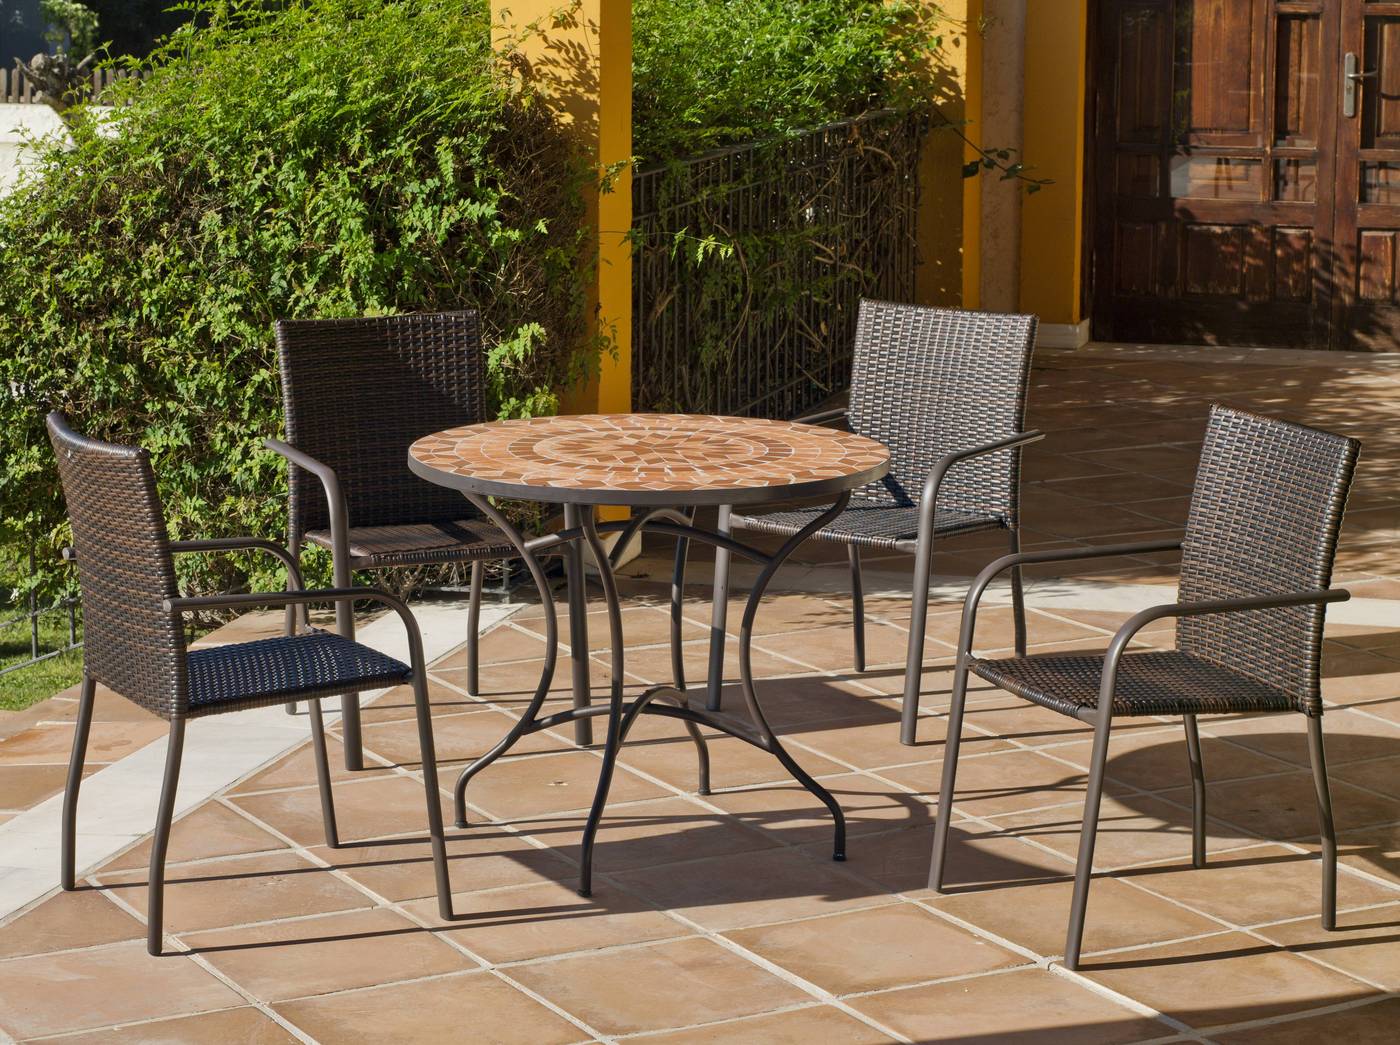 Conjunto de acero color bronce: 1 mesa de acero forjado, con tablero mosaico + 4 sillones de acero y ratán sintético